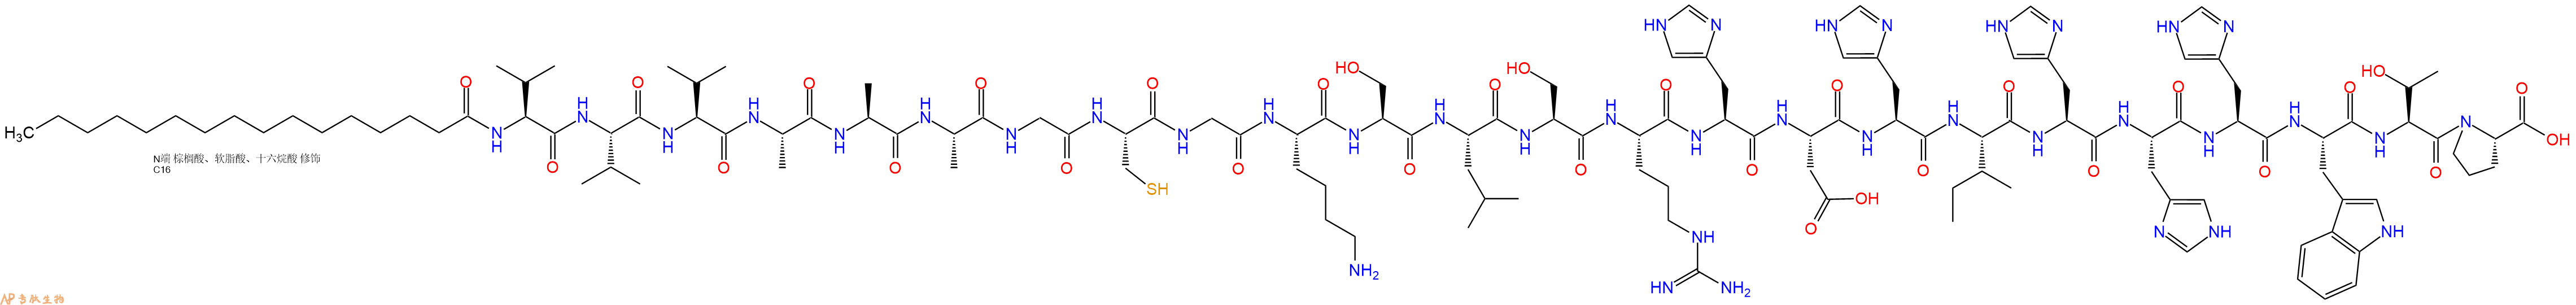 专肽生物产品棕榈酸-VVVAAAGCGKSLSRHDHIHHHWTP